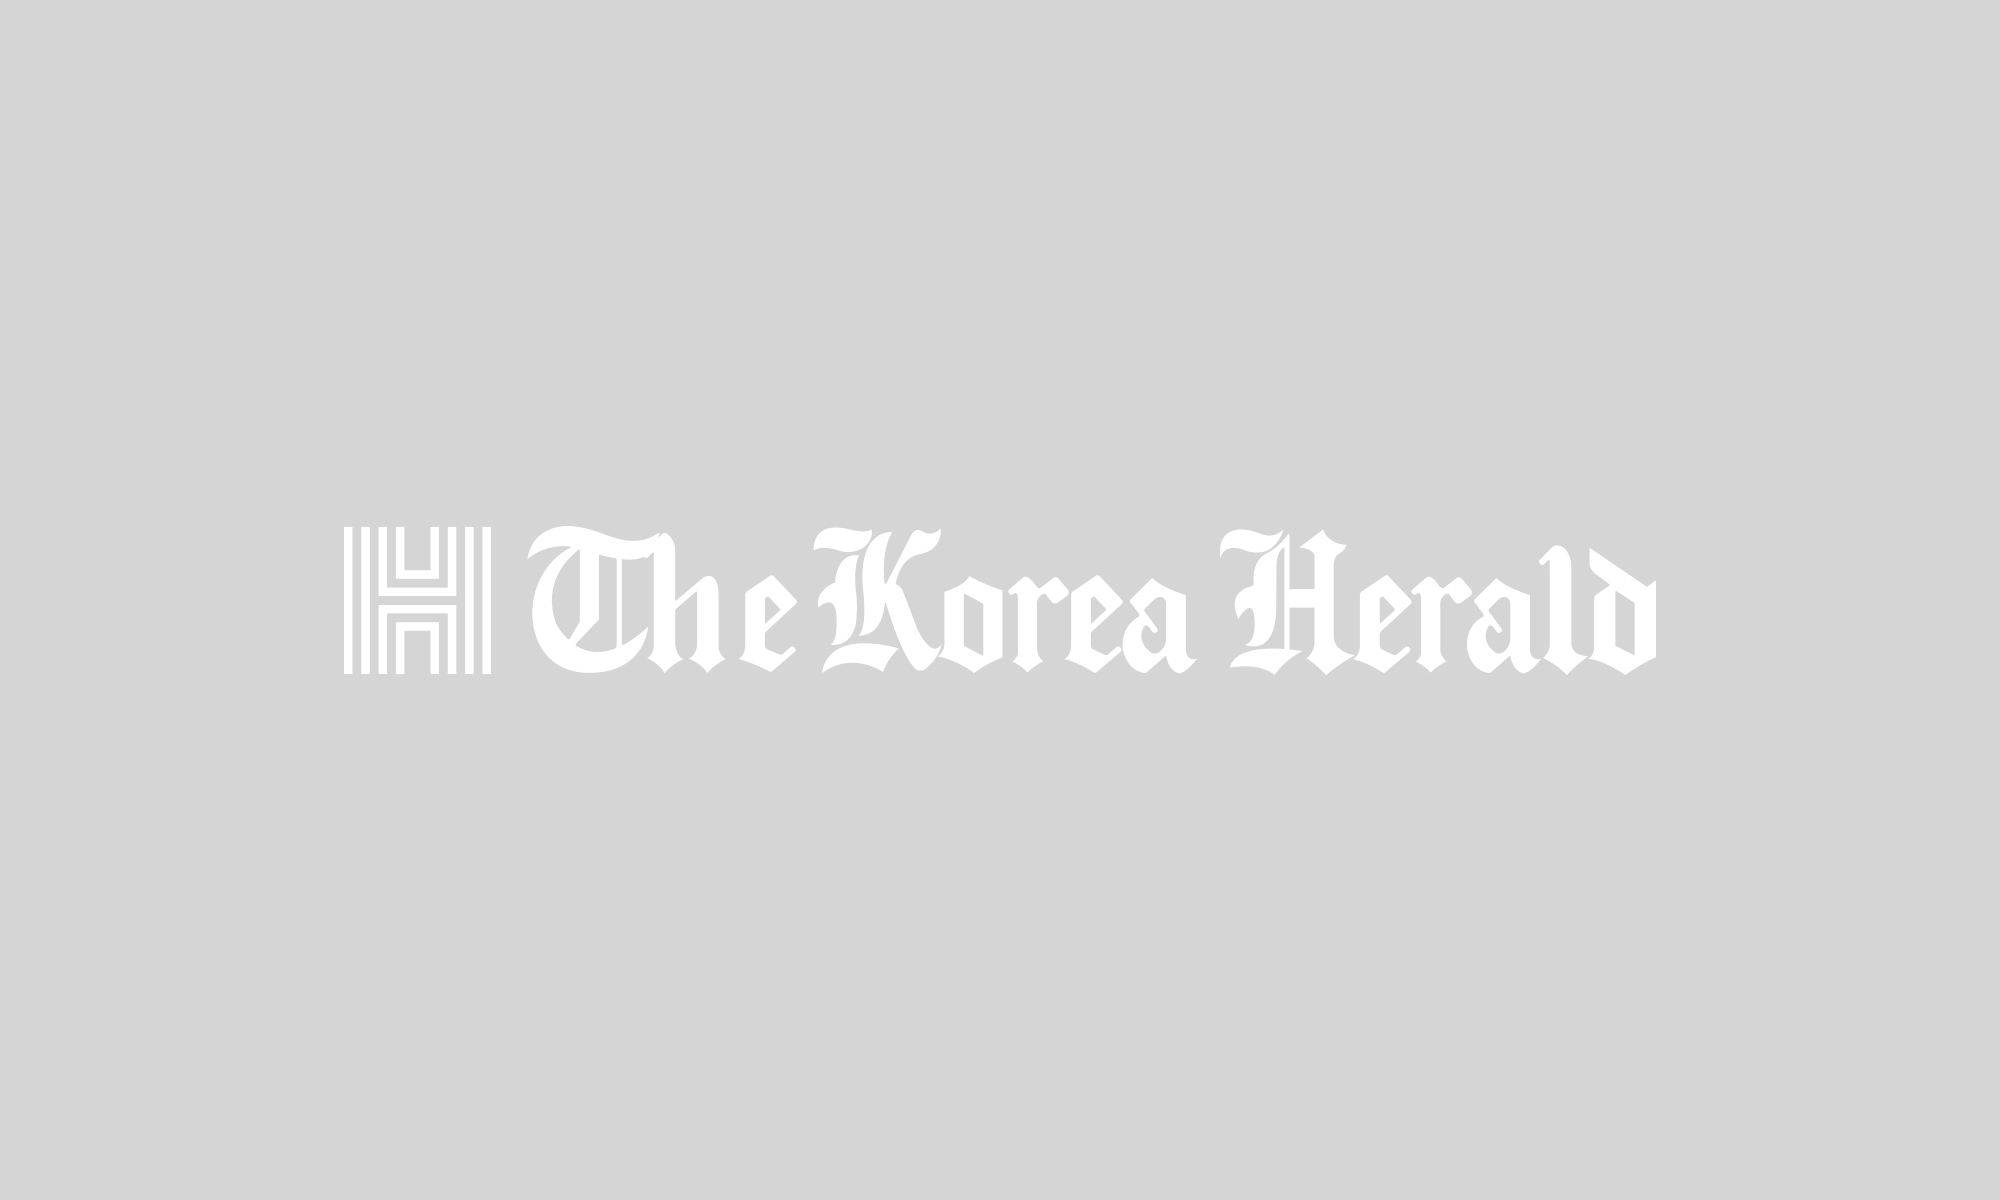 Hyundai, Kia set sales goal of 7 million units